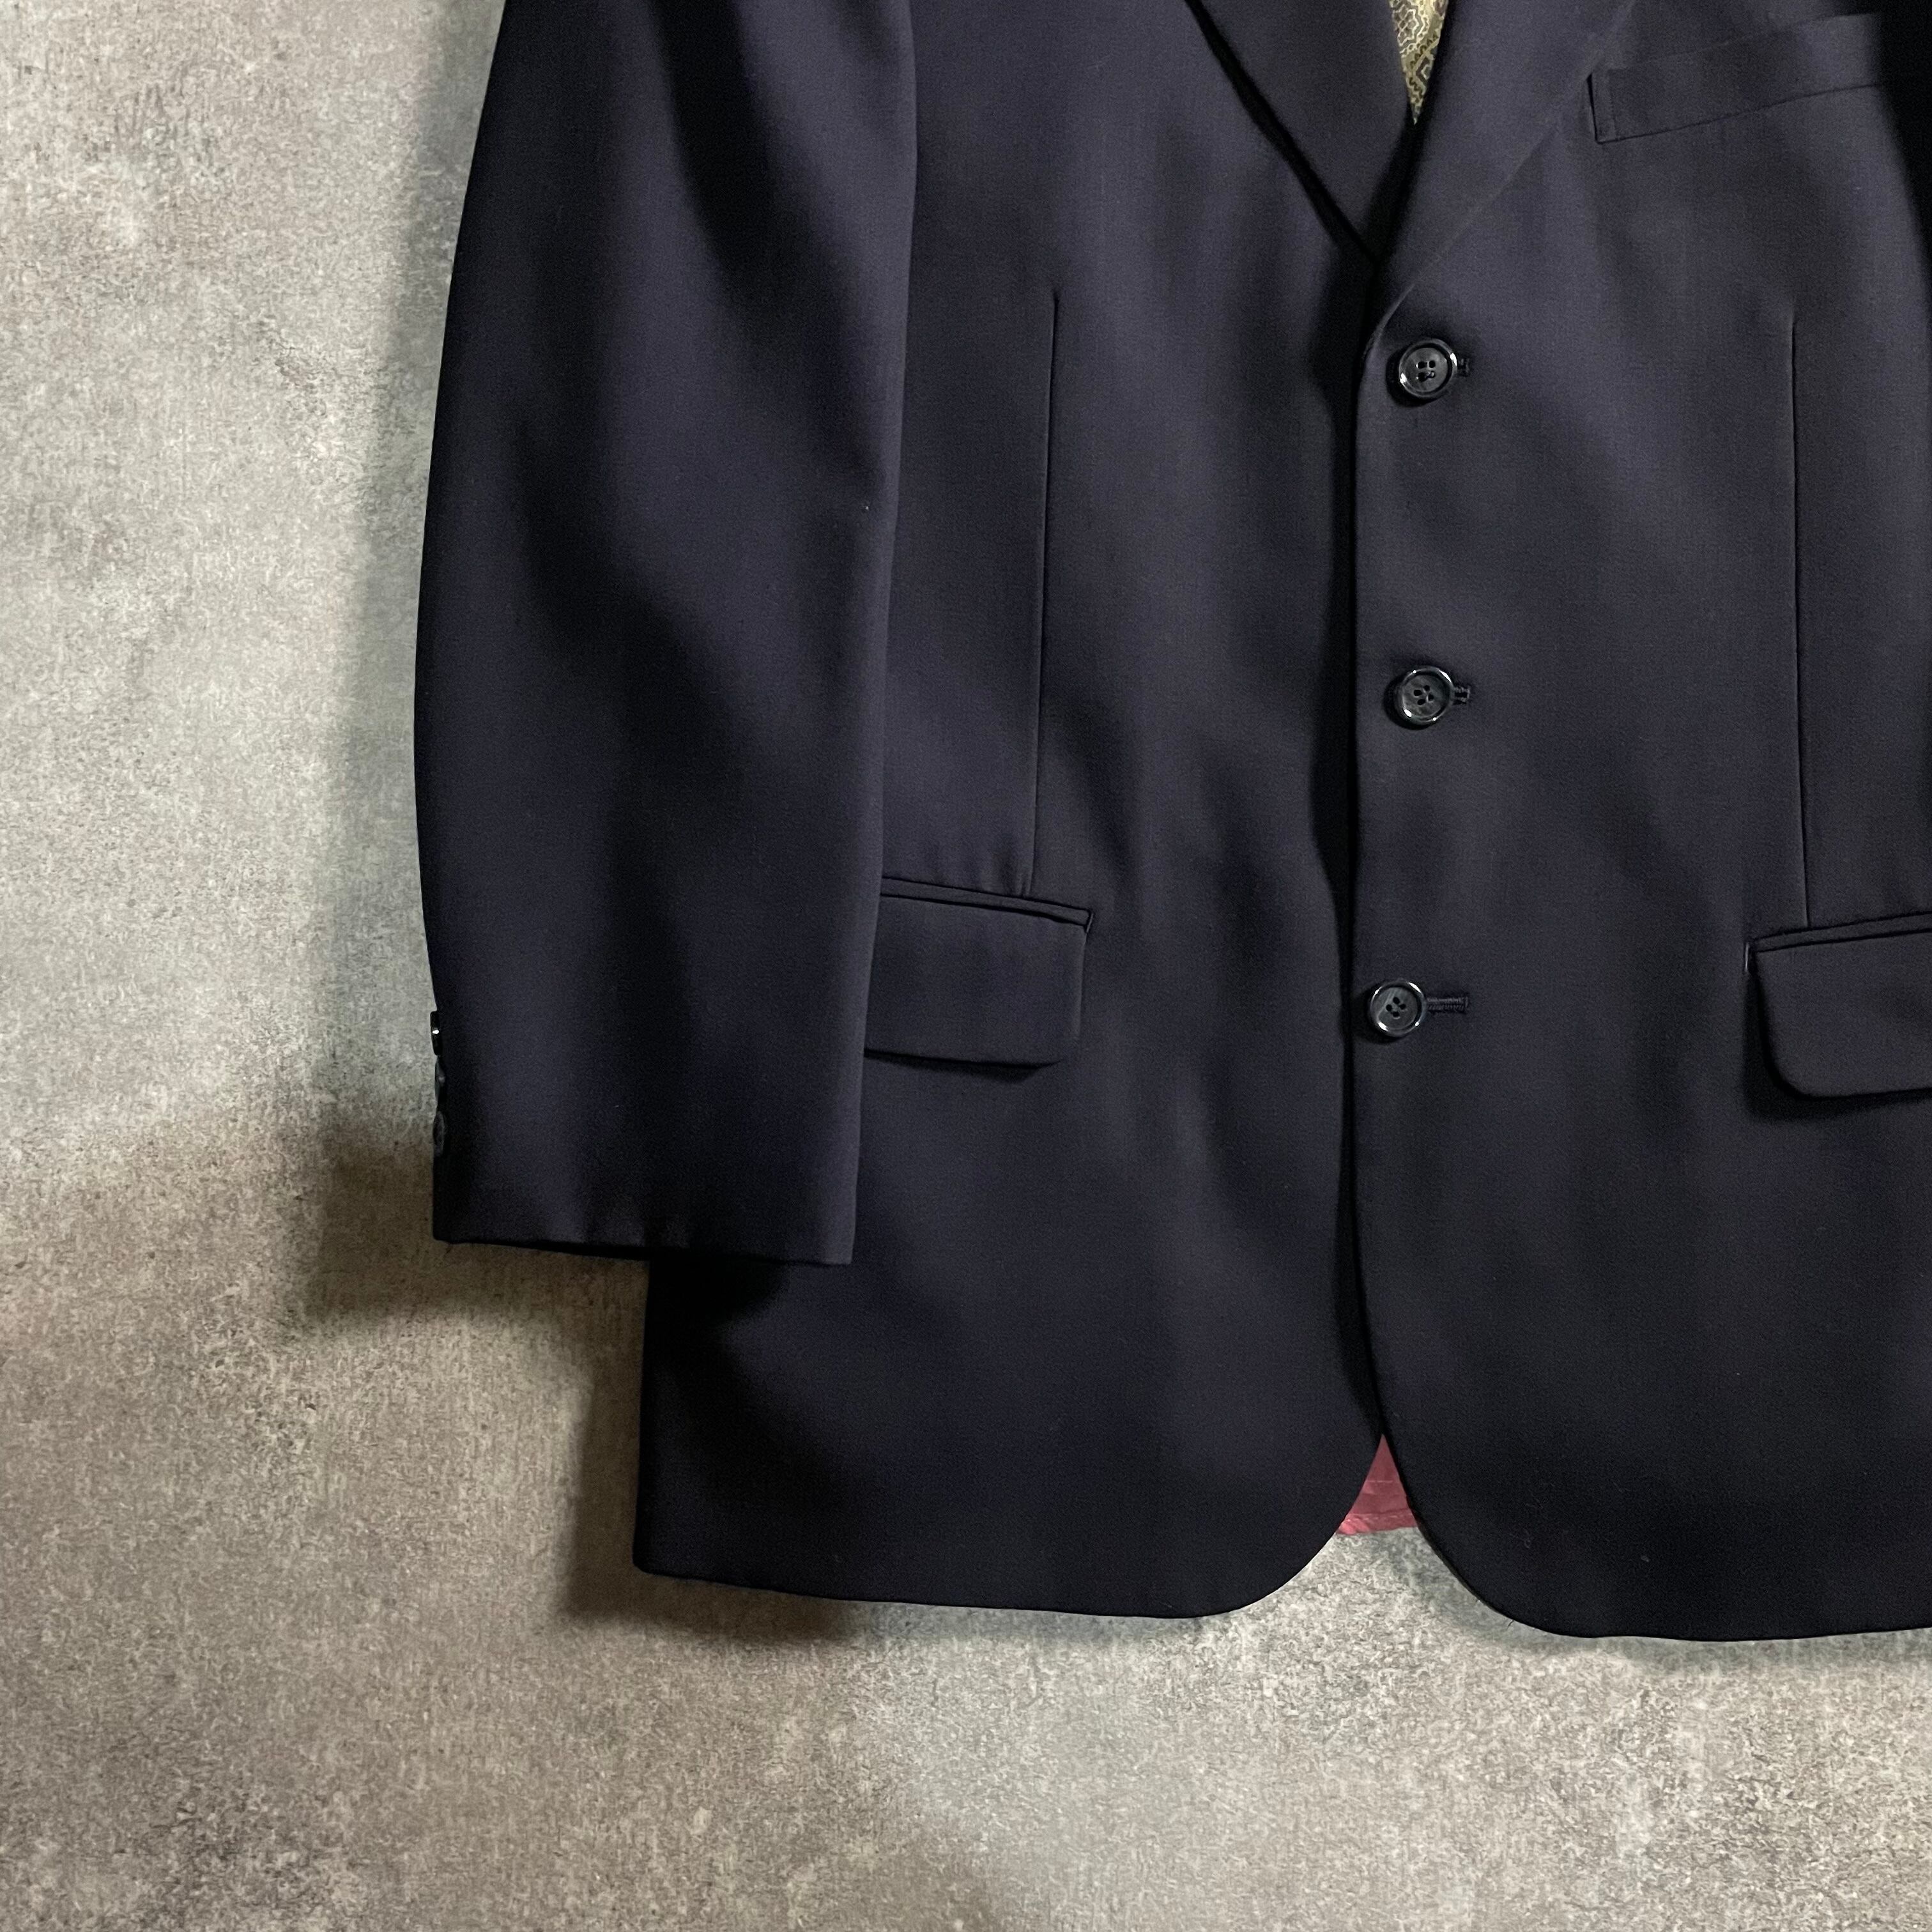 LOST特注【vintage】セットアップ シングルスーツ ブラック 上質ウール